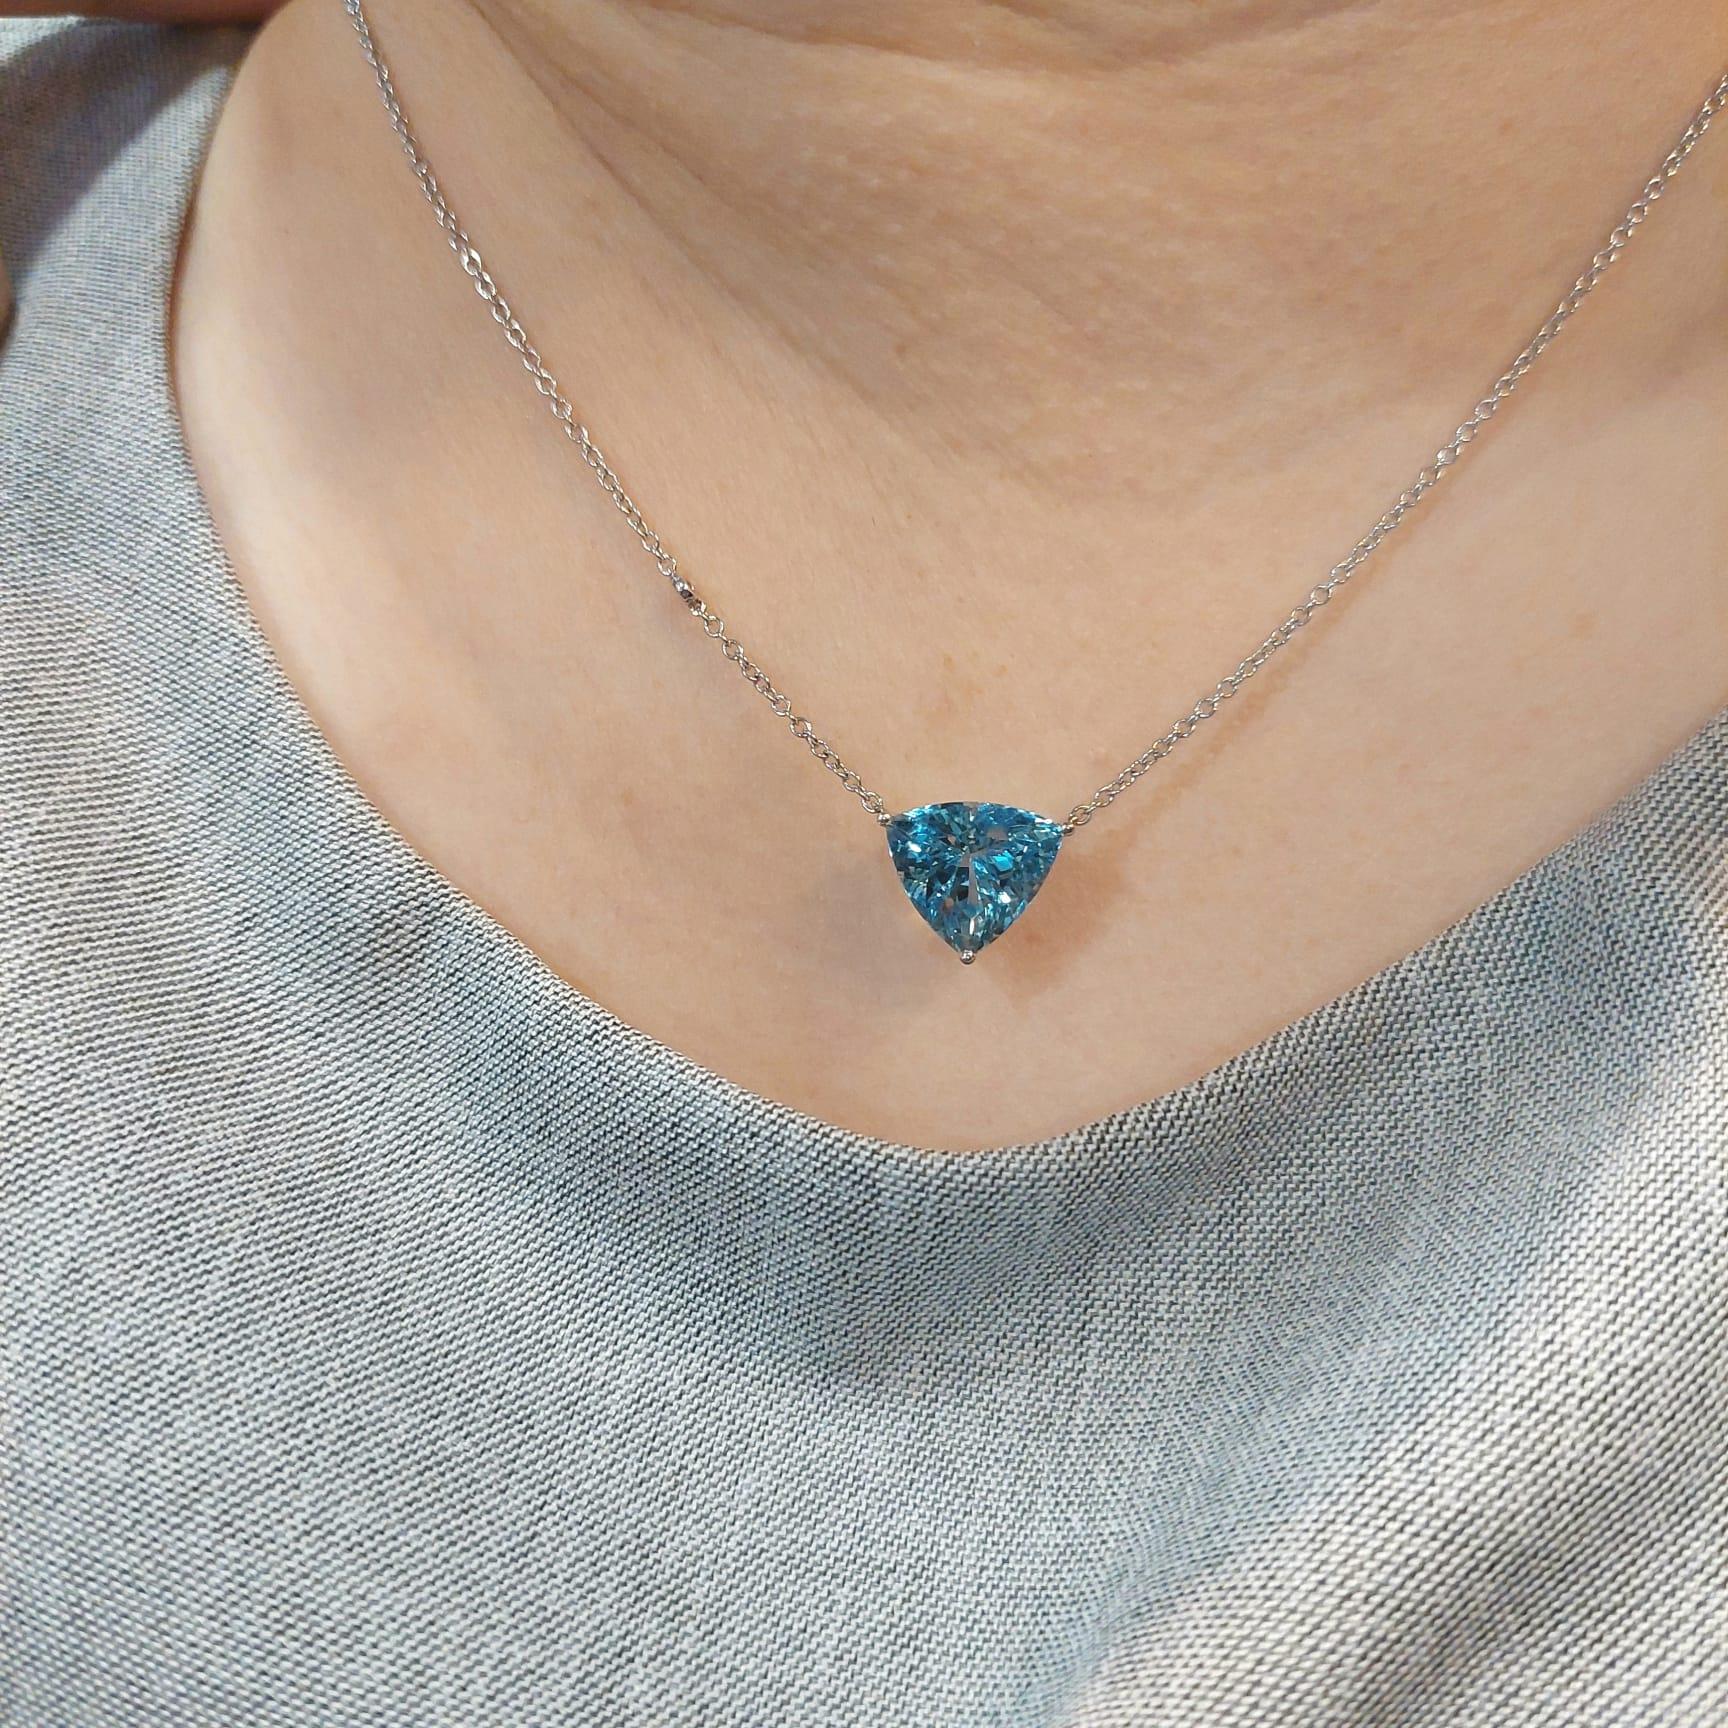 18K Weißgold Diamant-Halskette mit Aquamarin
Der Aquamarin, der strahlend blaue Geburtsstein des Monats März, hat einen der einzigartigsten Farbtöne unter den Edelsteinen. Seine satte Farbe ist seit langem ein Symbol für Jugendlichkeit, Gesundheit